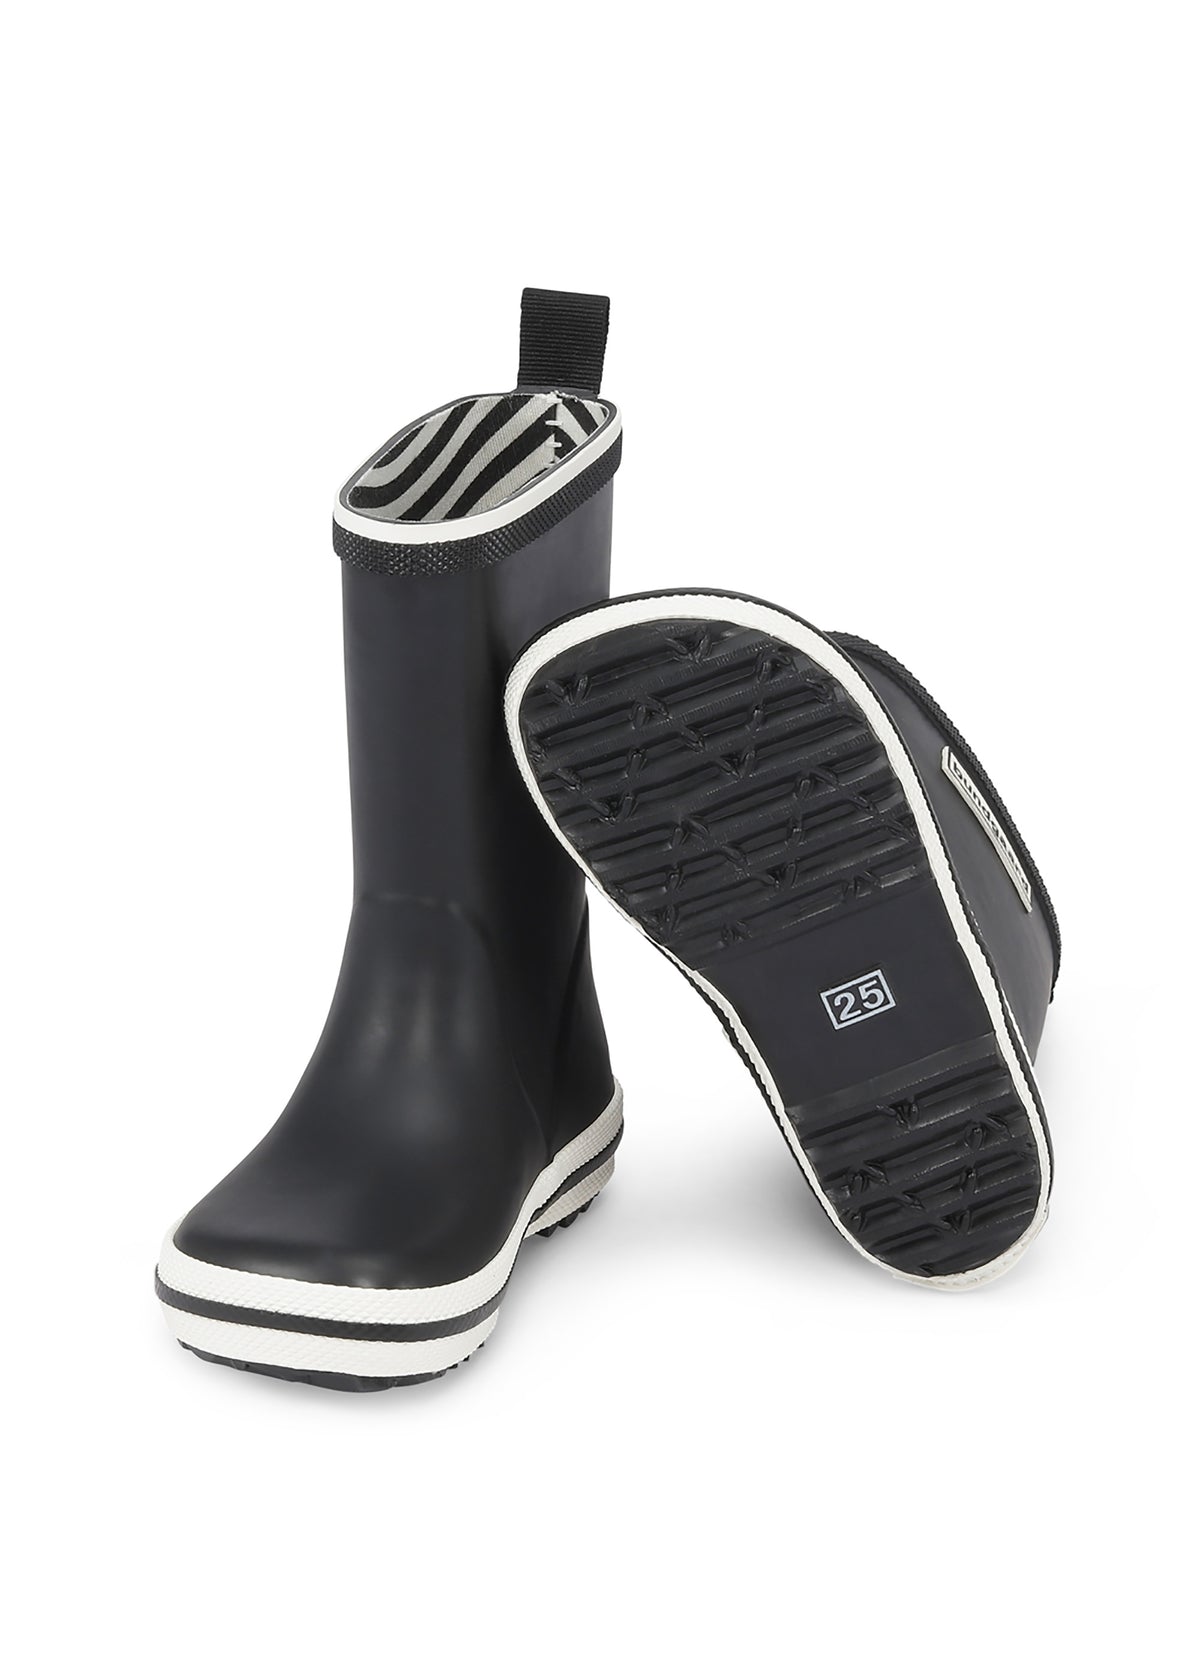 Rubber boots - black, Bundgaard Zero Heel